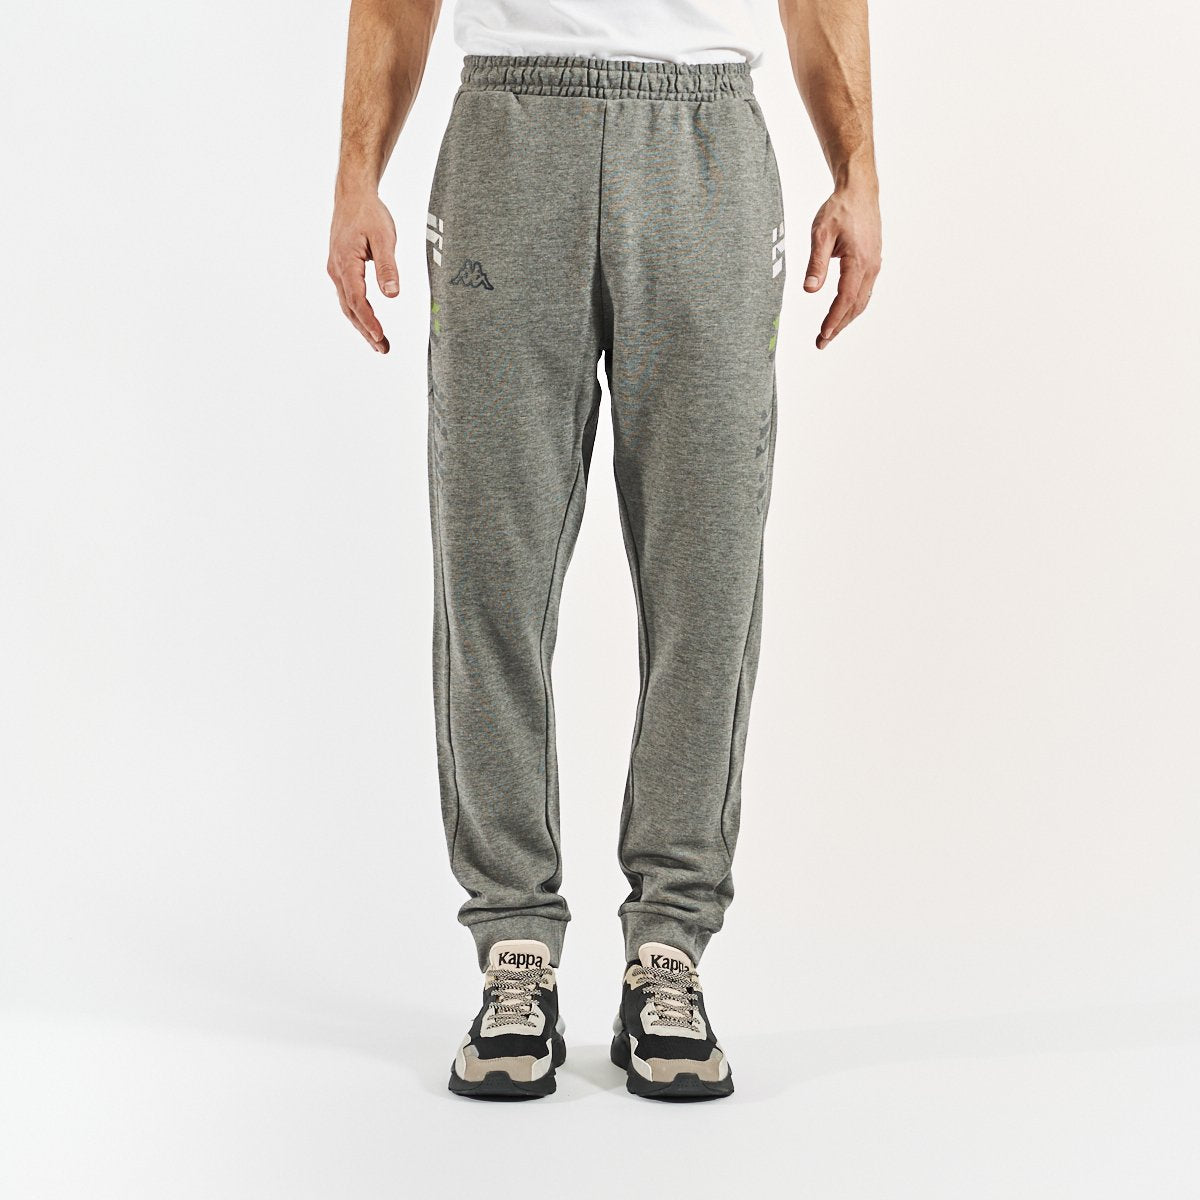 Pantalon Grifon hombre gris - Imagen 1